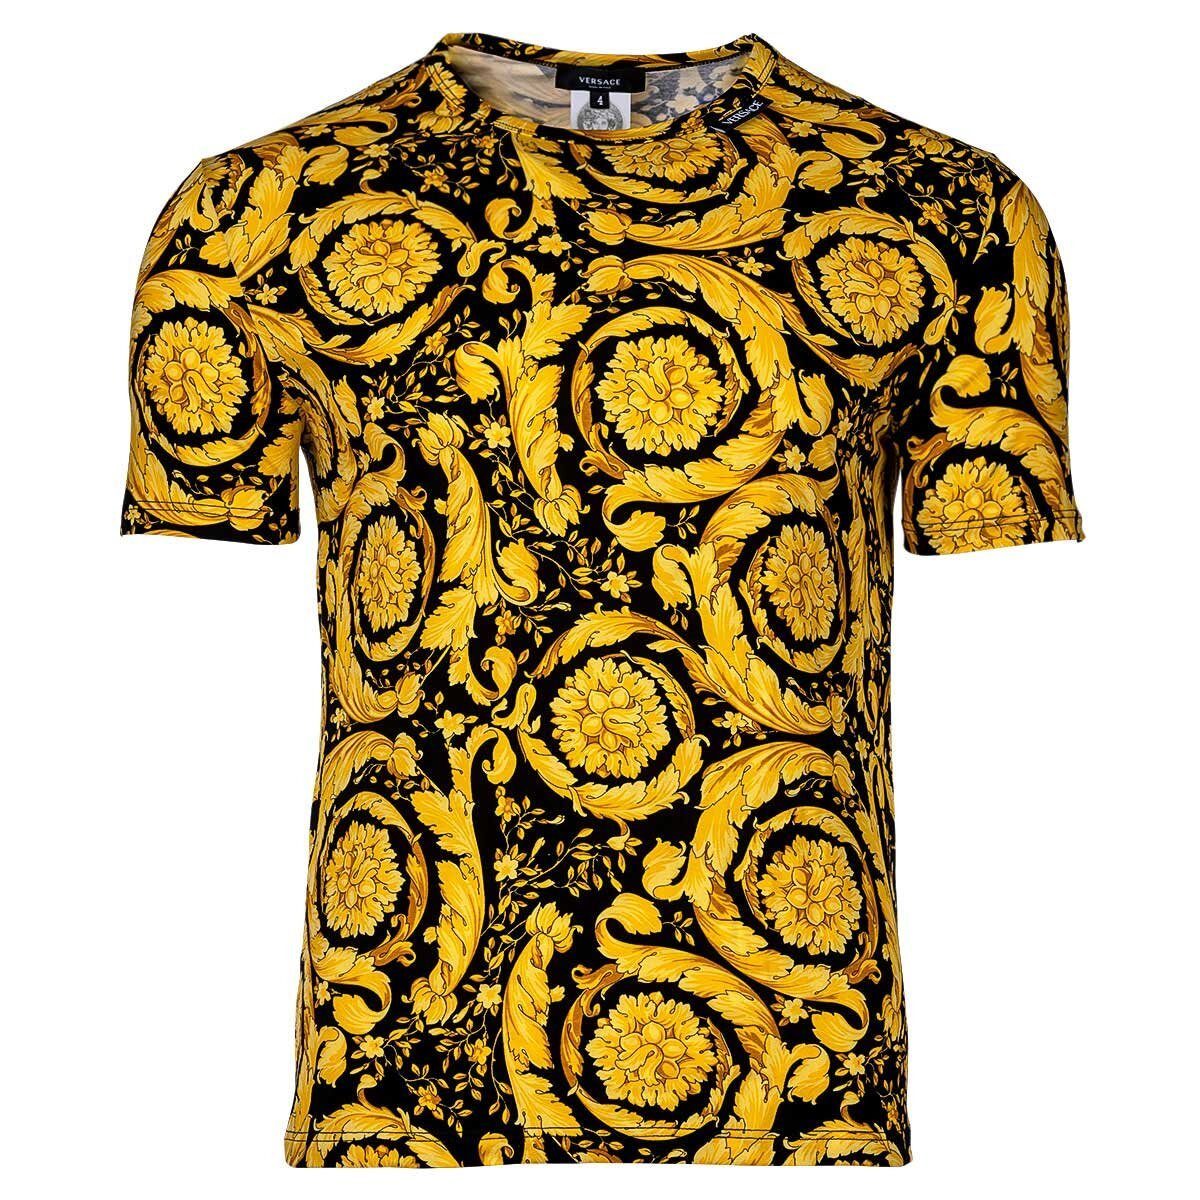 Stretch - Unterhemd, T-Shirt Versace Gold/Schwarz Rundhals, Herren T-Shirt